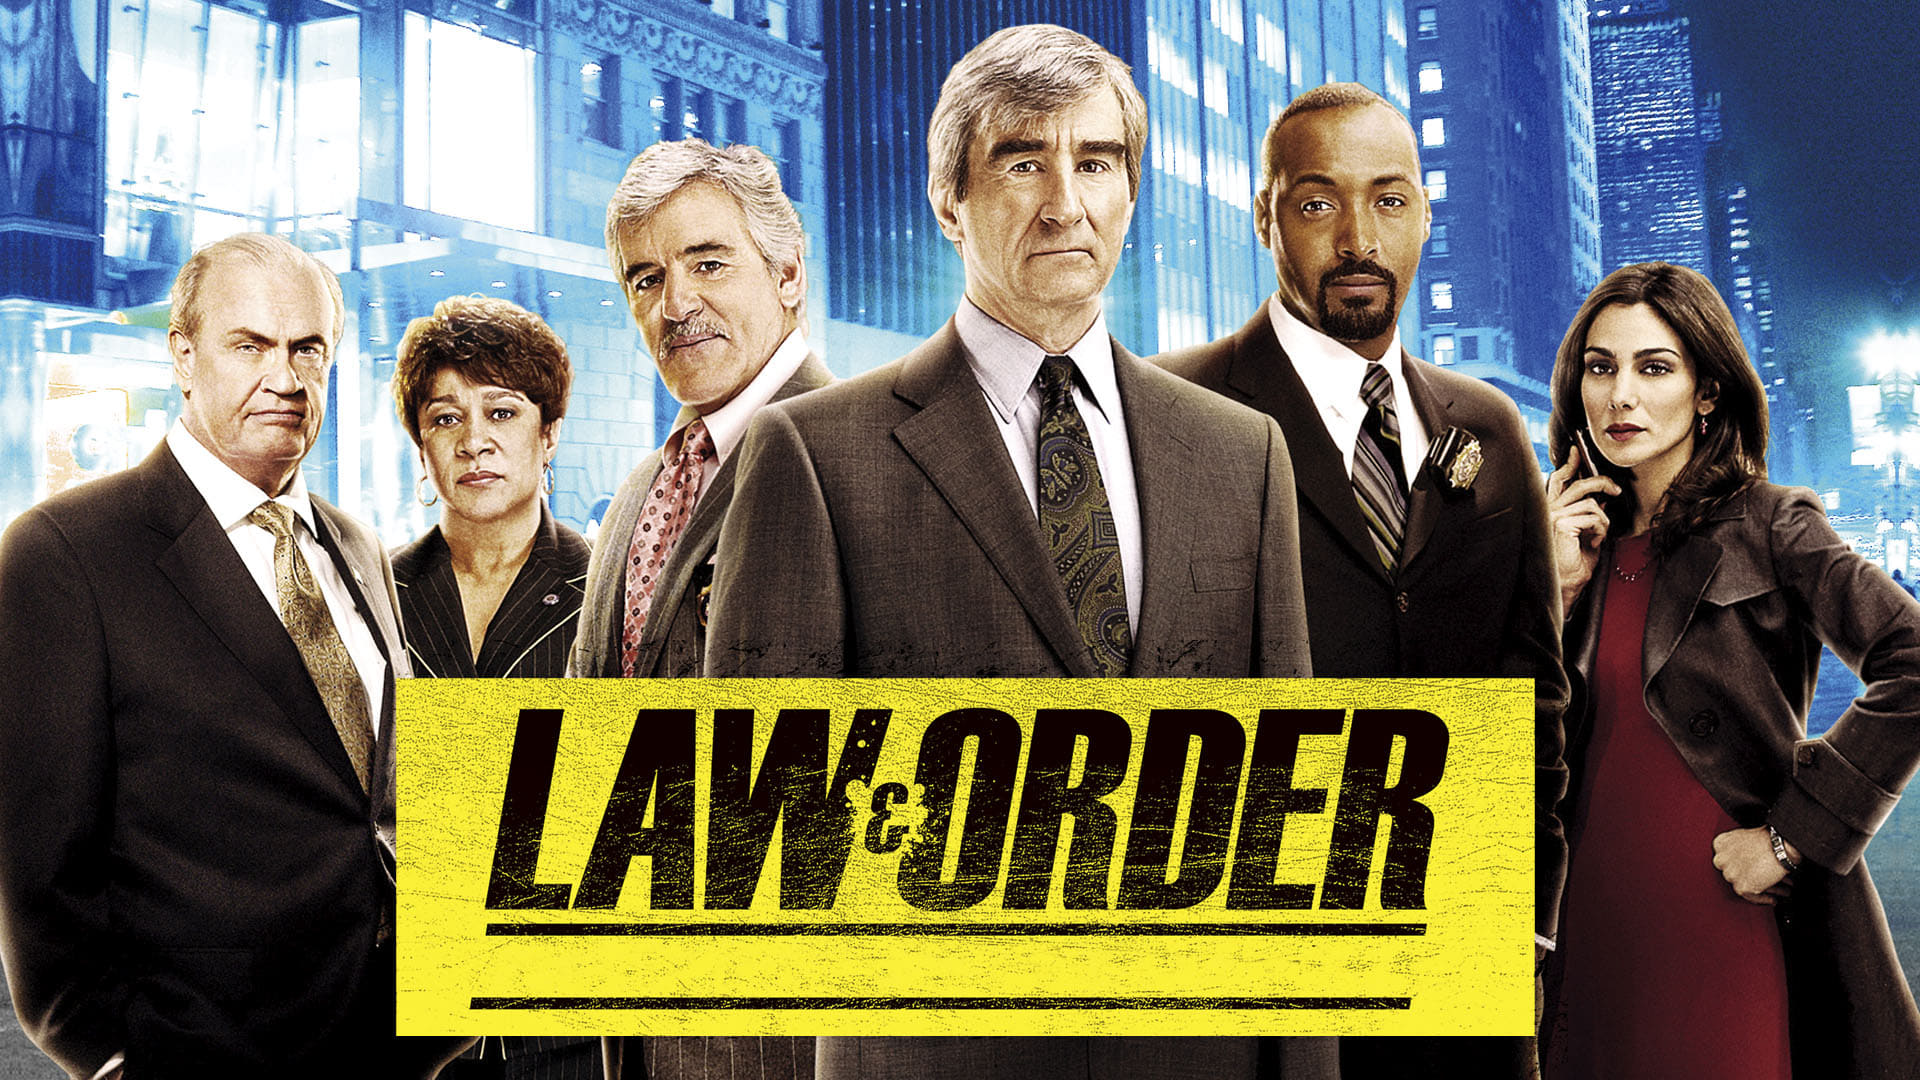 Law & Order - I due volti della giustizia